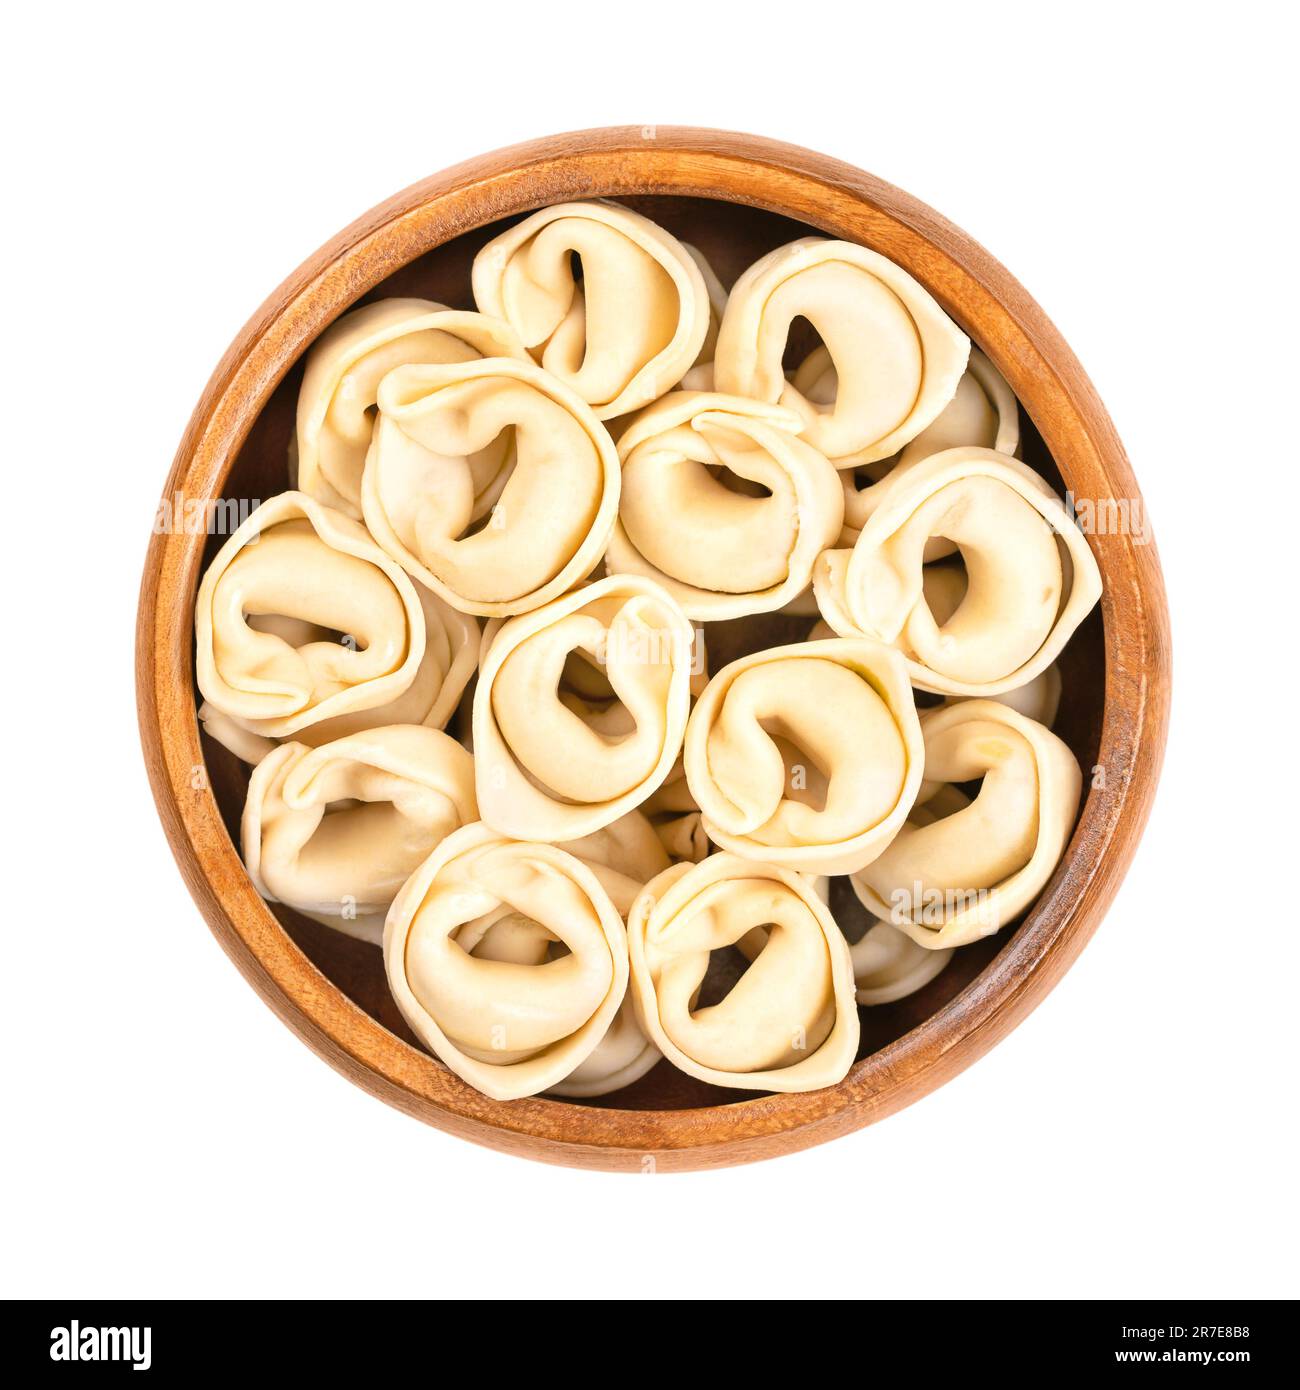 Tortellini non cuits et séchés, dans un bol en bois. Boulettes farcies fabriquées industriellement, pâtes italiennes, de forme distinctive. Banque D'Images